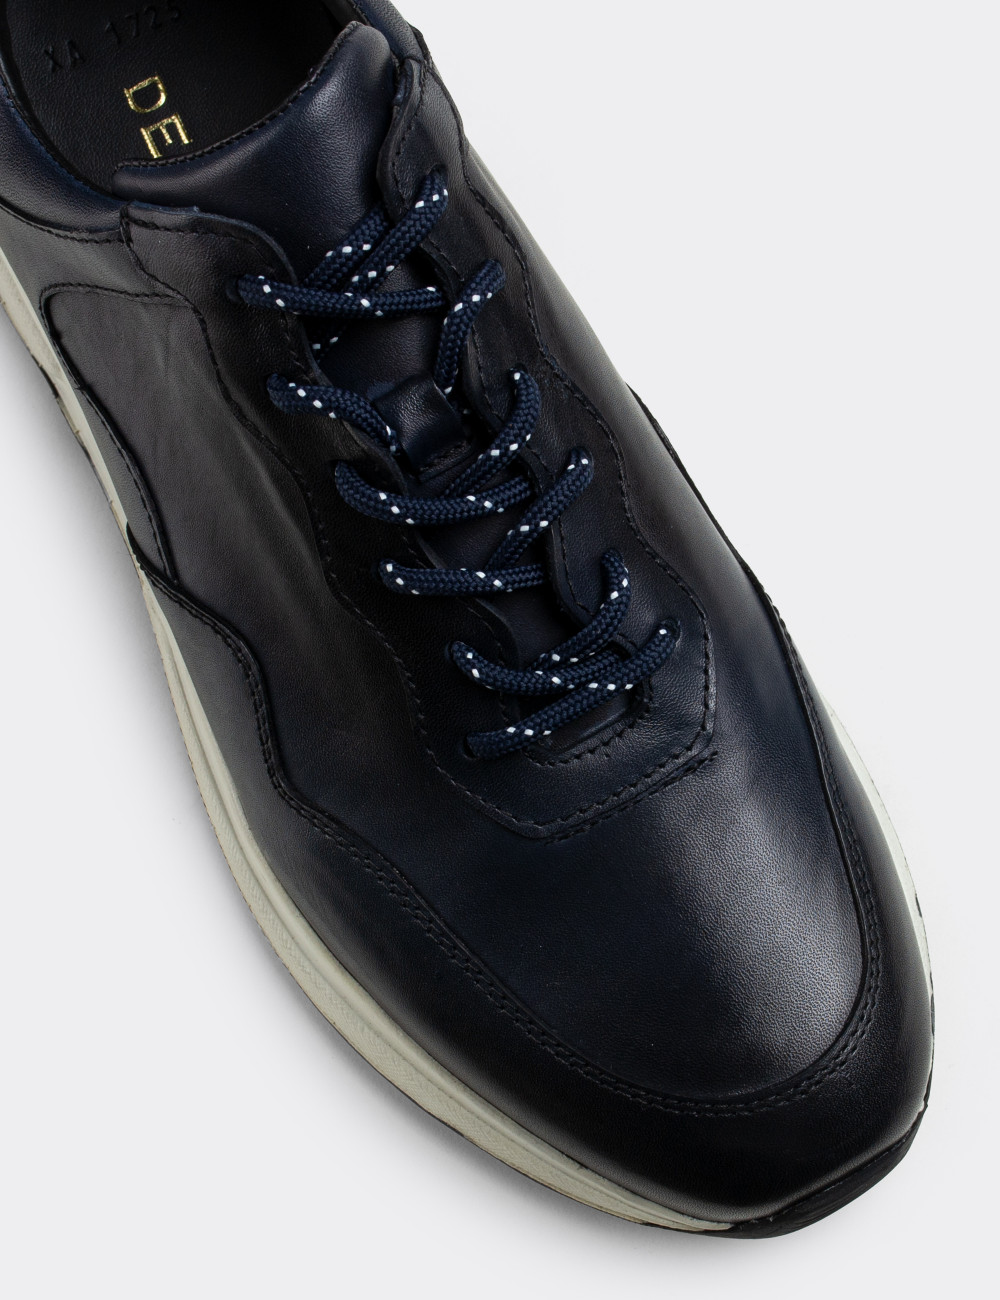 Hakiki Deri Lacivert Sneaker Erkek Ayakkabı - 01725MLCVP01